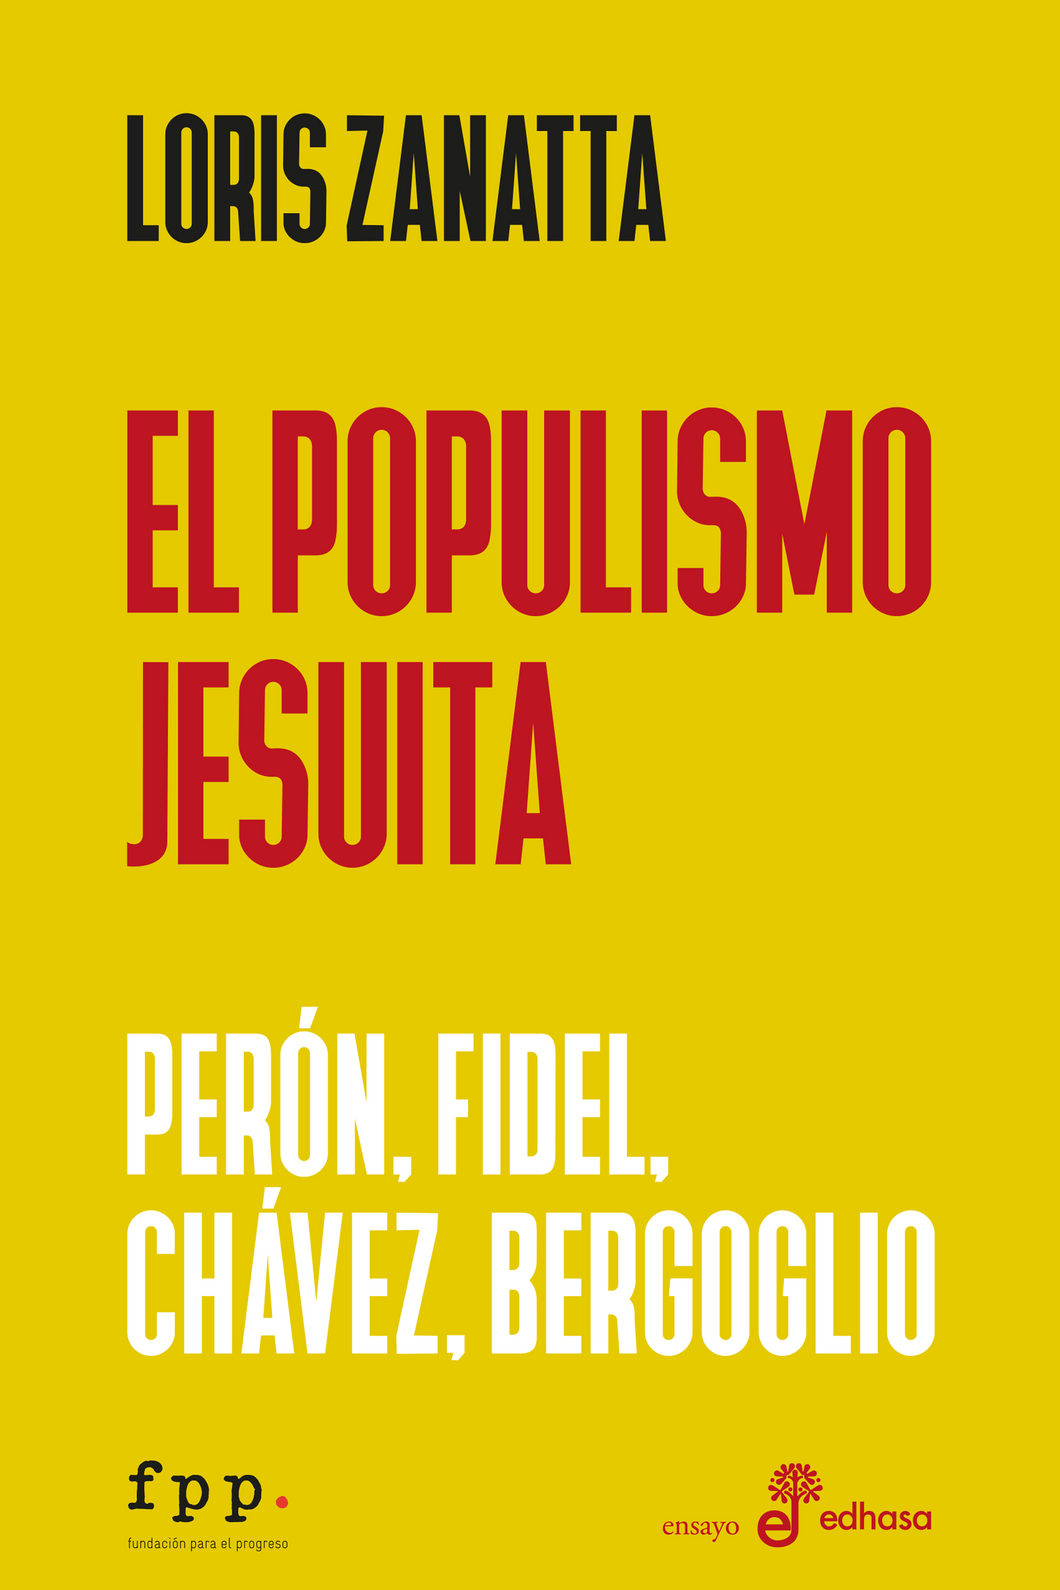 El populismo jesuita